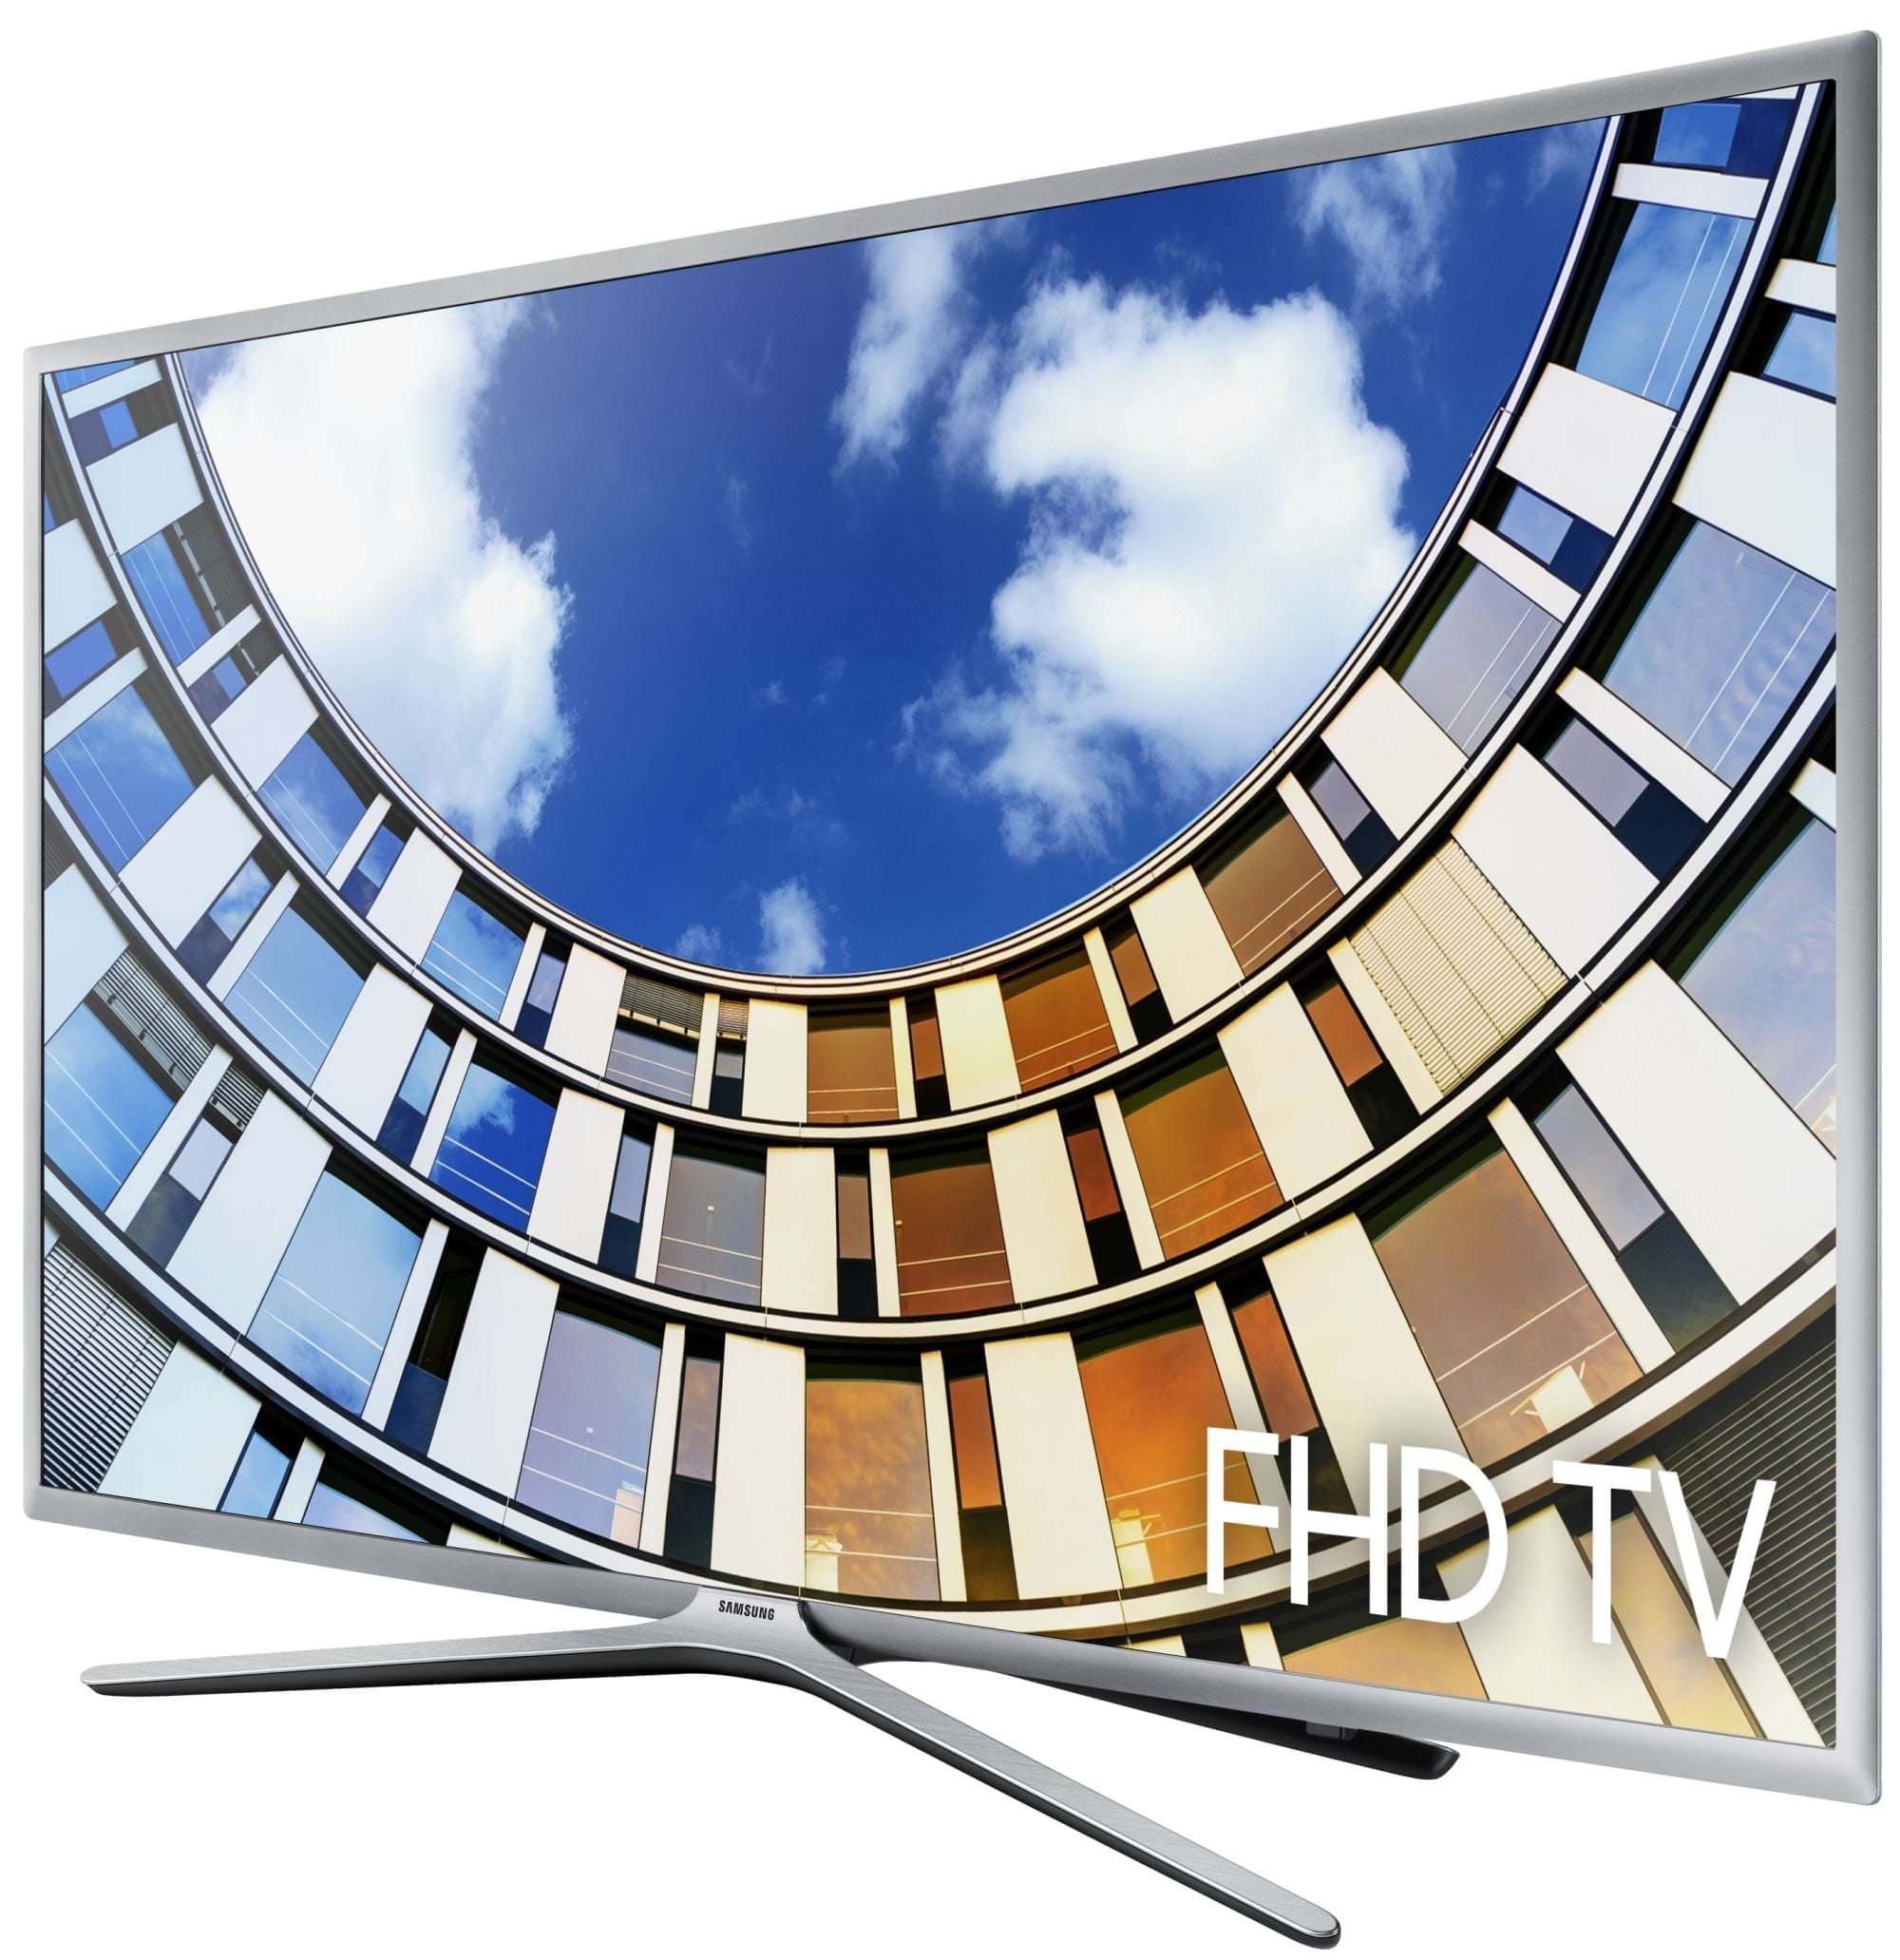 Samsung UE43M5600 - Televisie